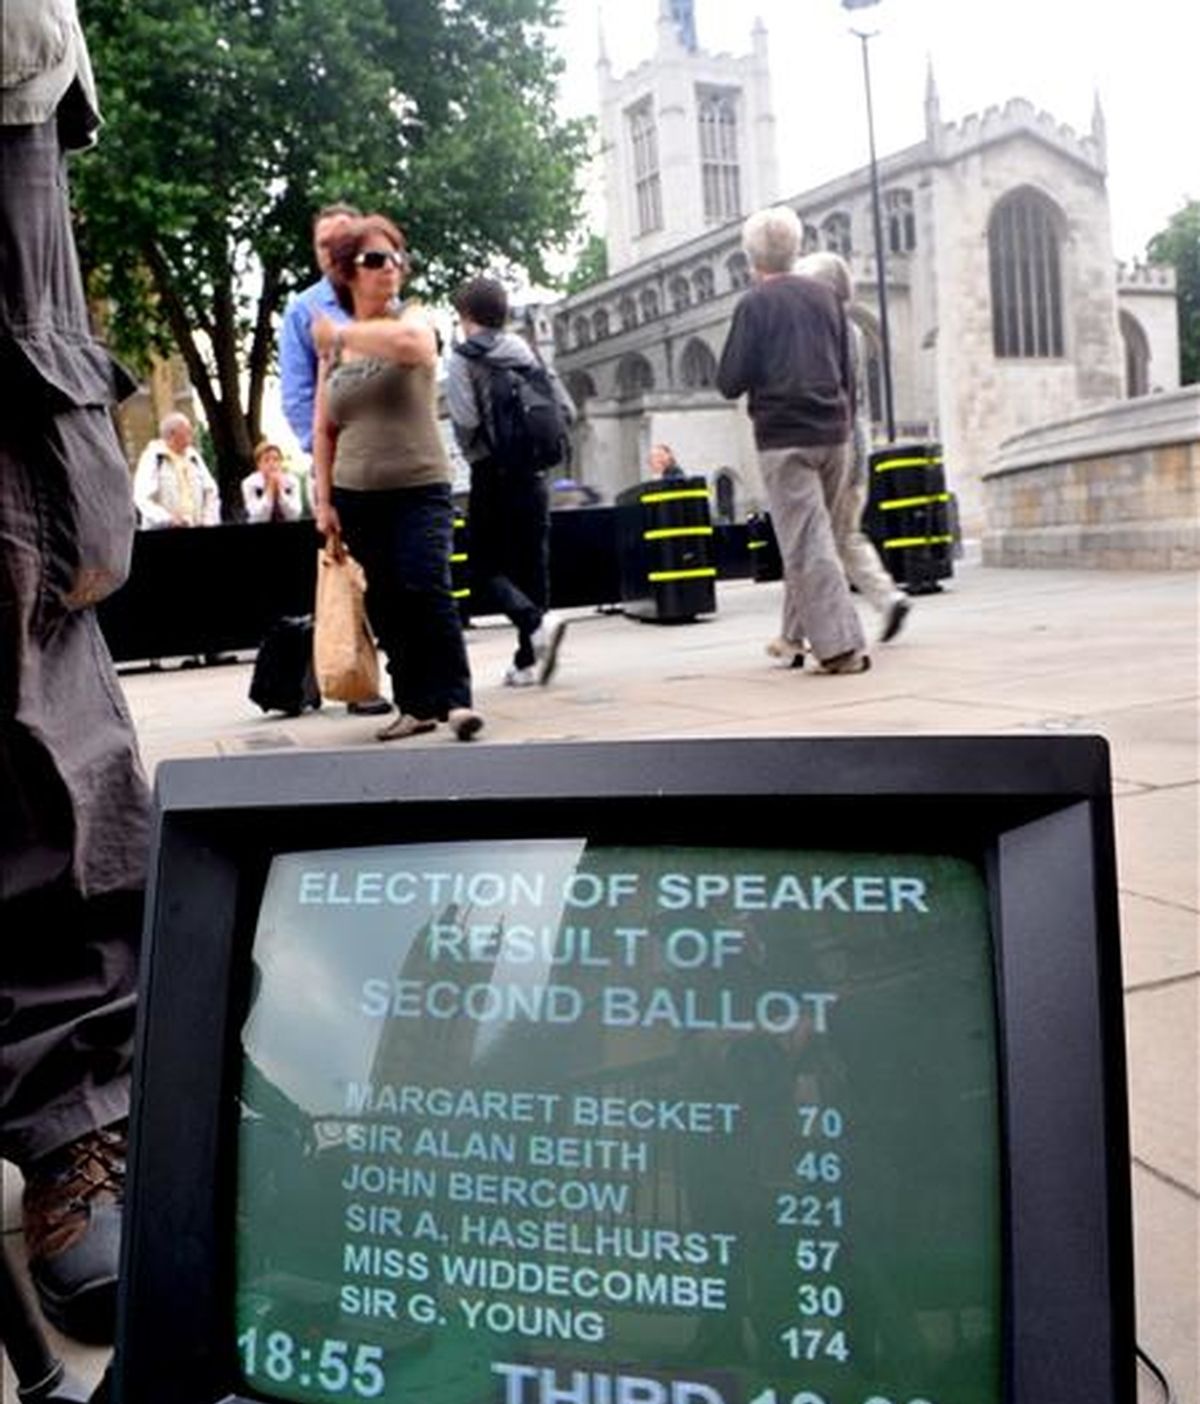 Un monitor situado en el exterior del Parlamento británico muestra los resultados de la segunda votación para elegir al nuevo presidente de la Cámara de los Comunes. EFE